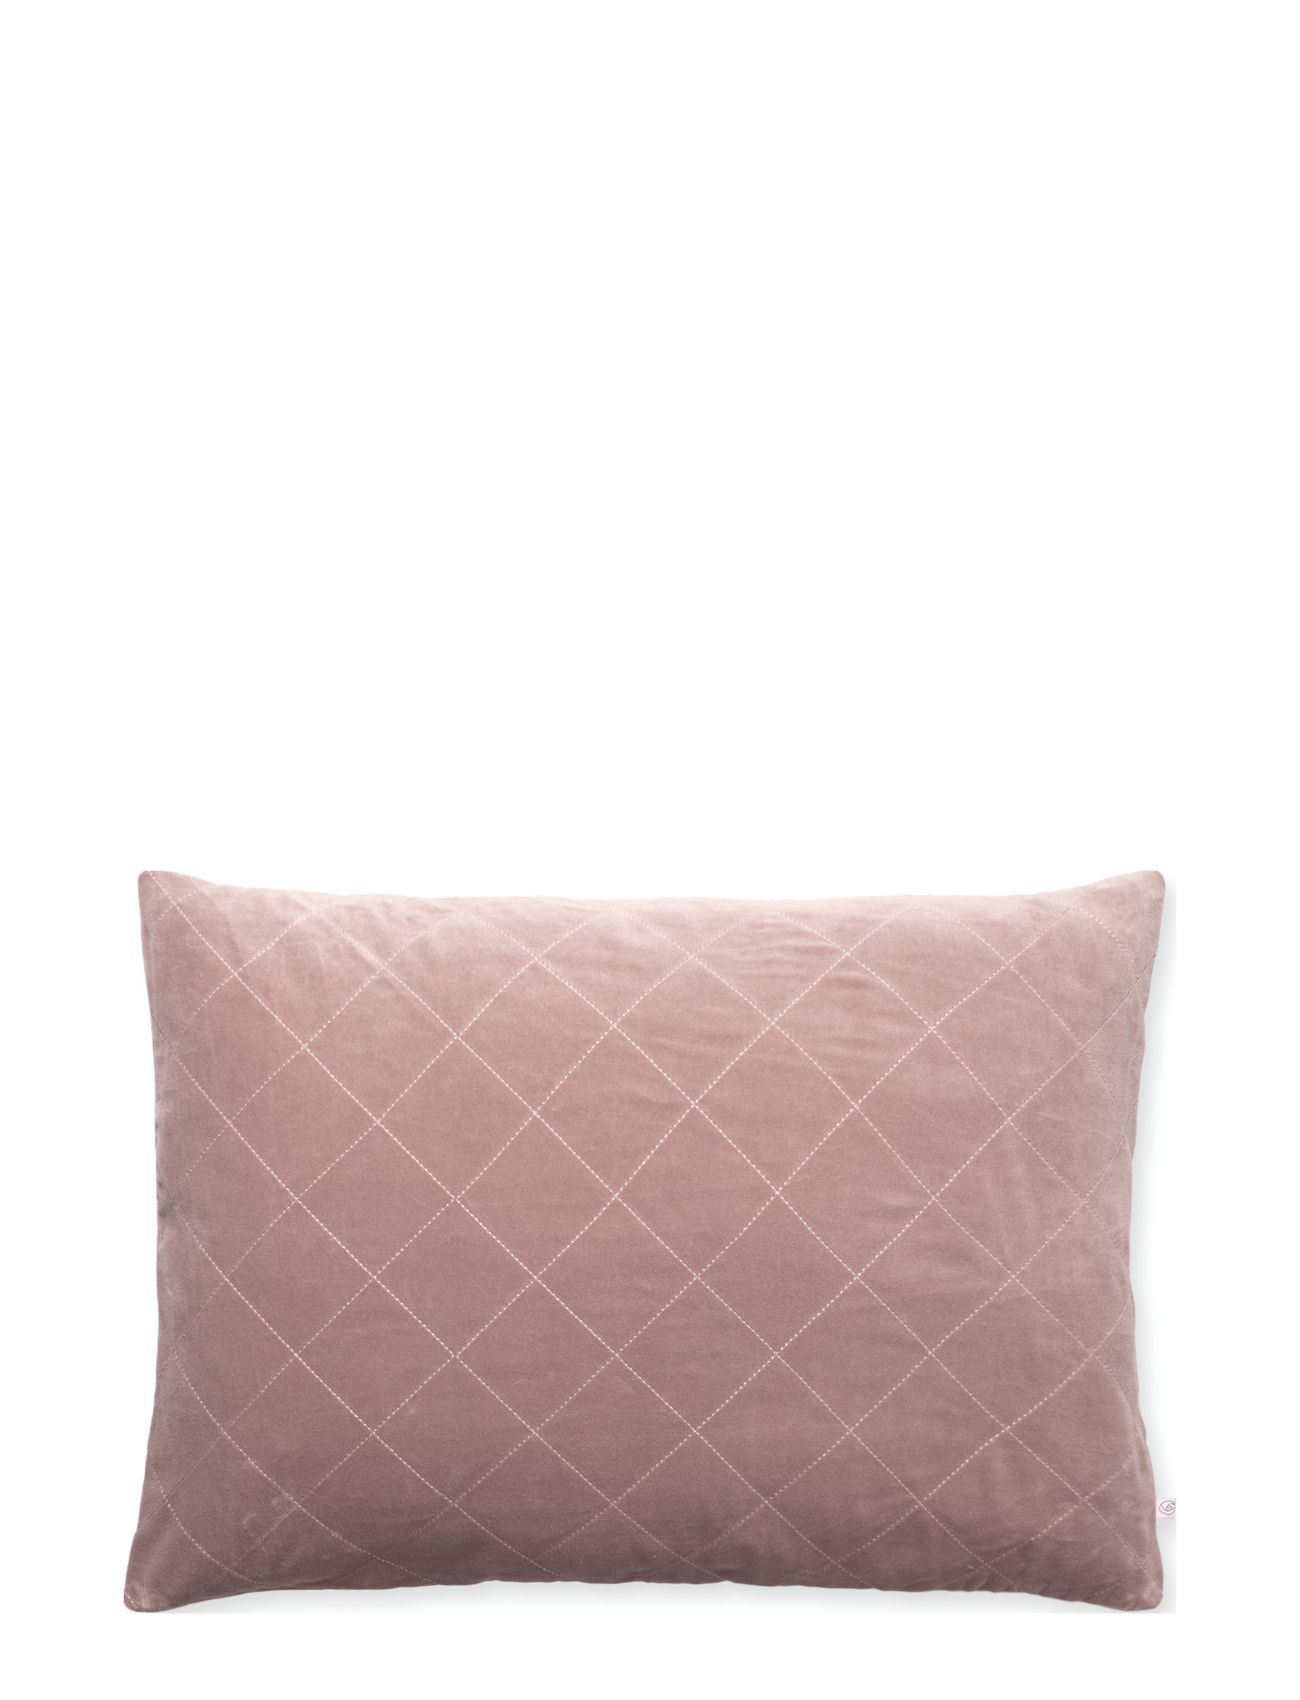 Rosemunde Velvet Quilt Emb, Cushion 50X70 Cm Home Textiles Cushions & Blankets Cushions Rosa Rosemunde